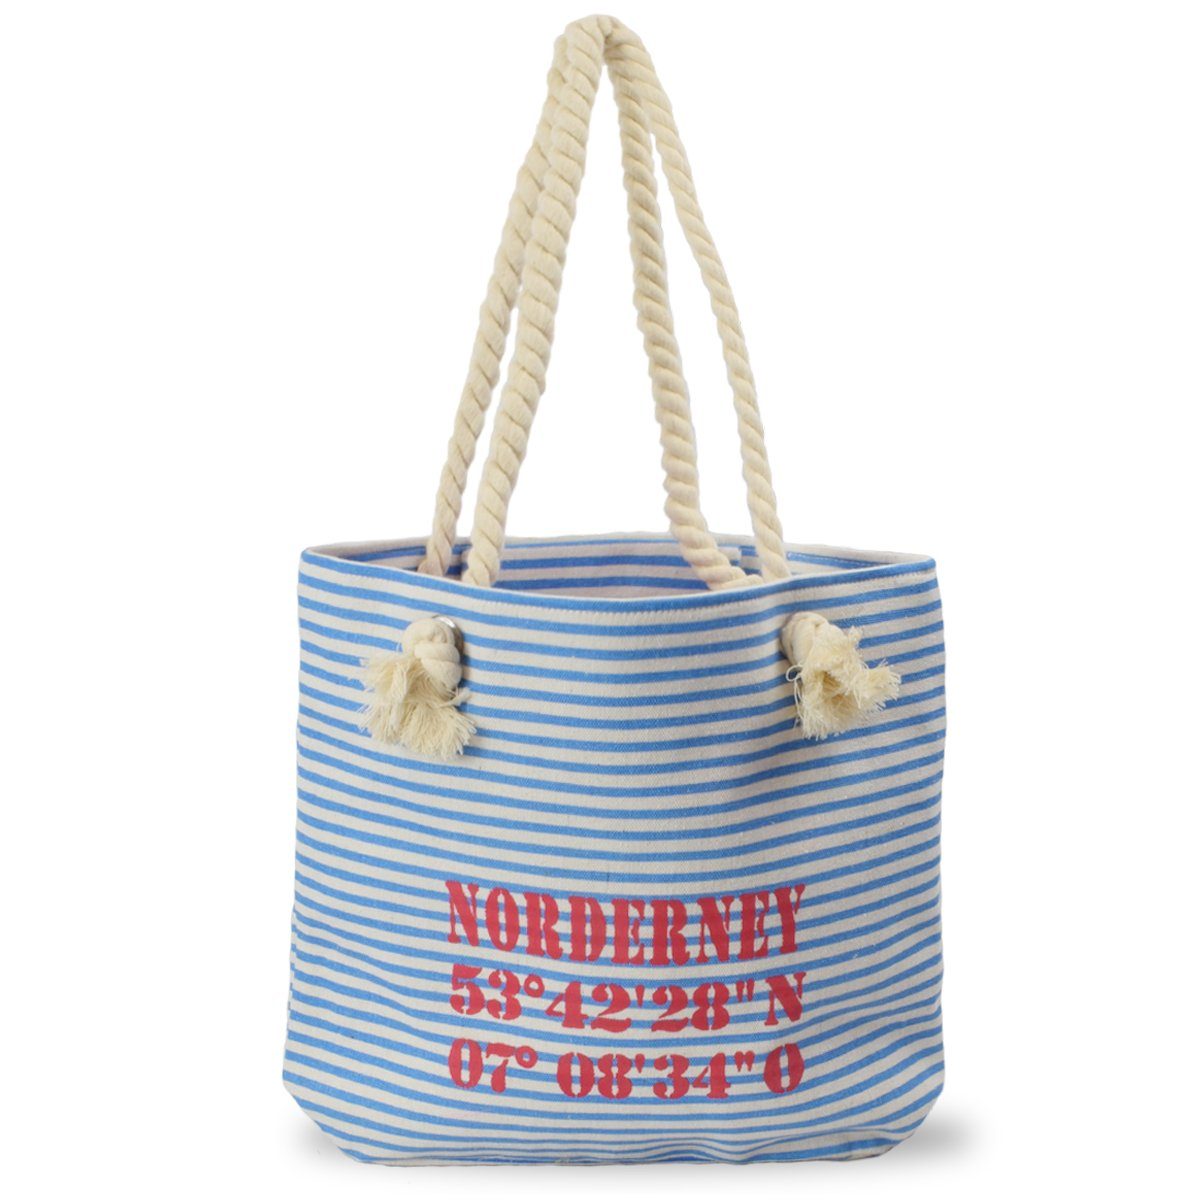 Sonia Originelli Umhängetasche City Shopper "Norderney" maritim gestreift Koordinaten Canvas, kleine Innentasche mit Reißverschluss